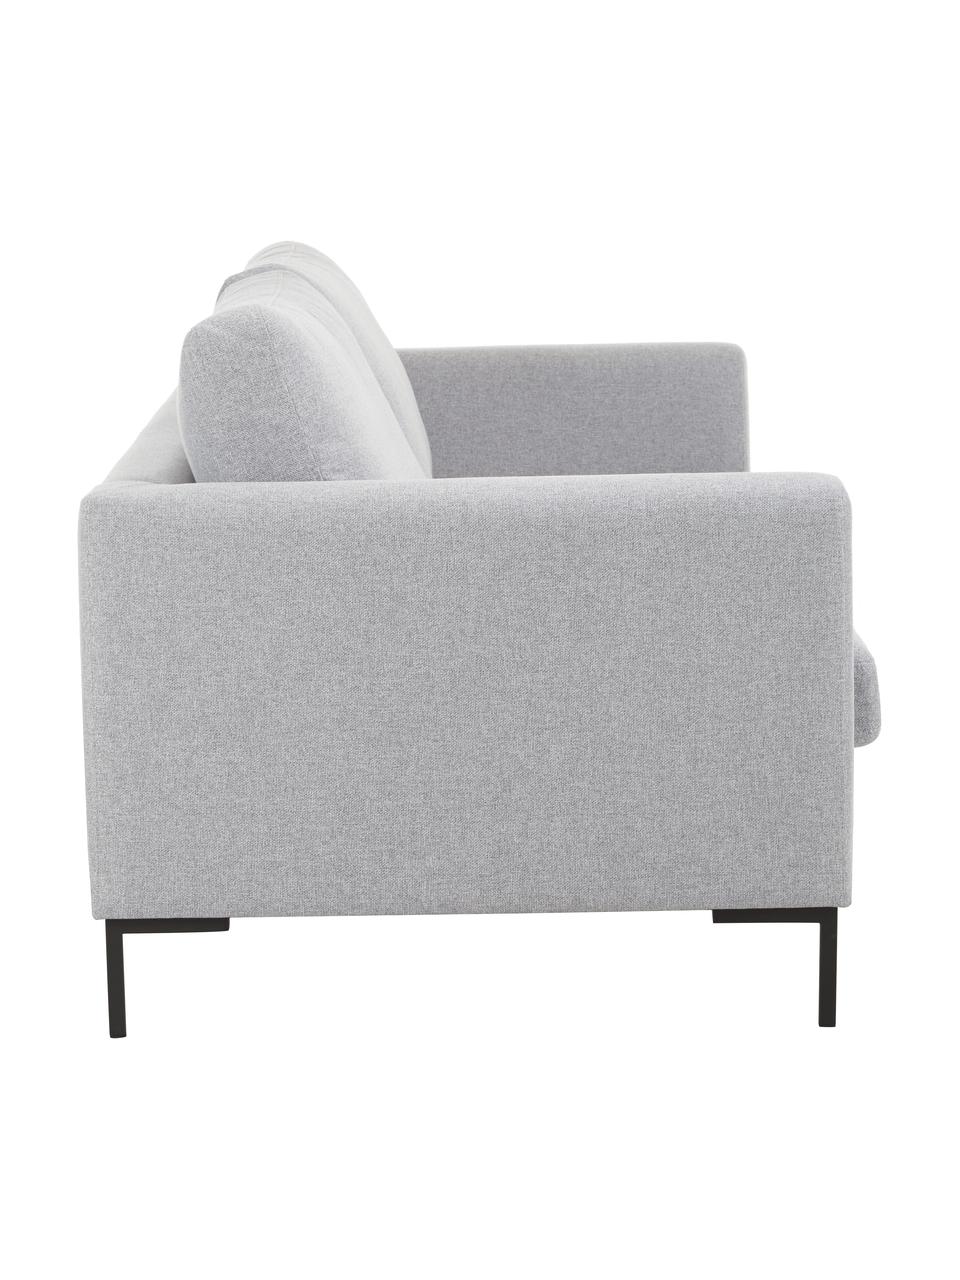 Sofa Luna (3-Sitzer) mit Metall-Füßen, Bezug: 100% Polyester Der hochwe, Gestell: Massives Buchenholz, Füße: Metall, galvanisiert, Webstoff Hellgrau, B 230 x T 95 cm